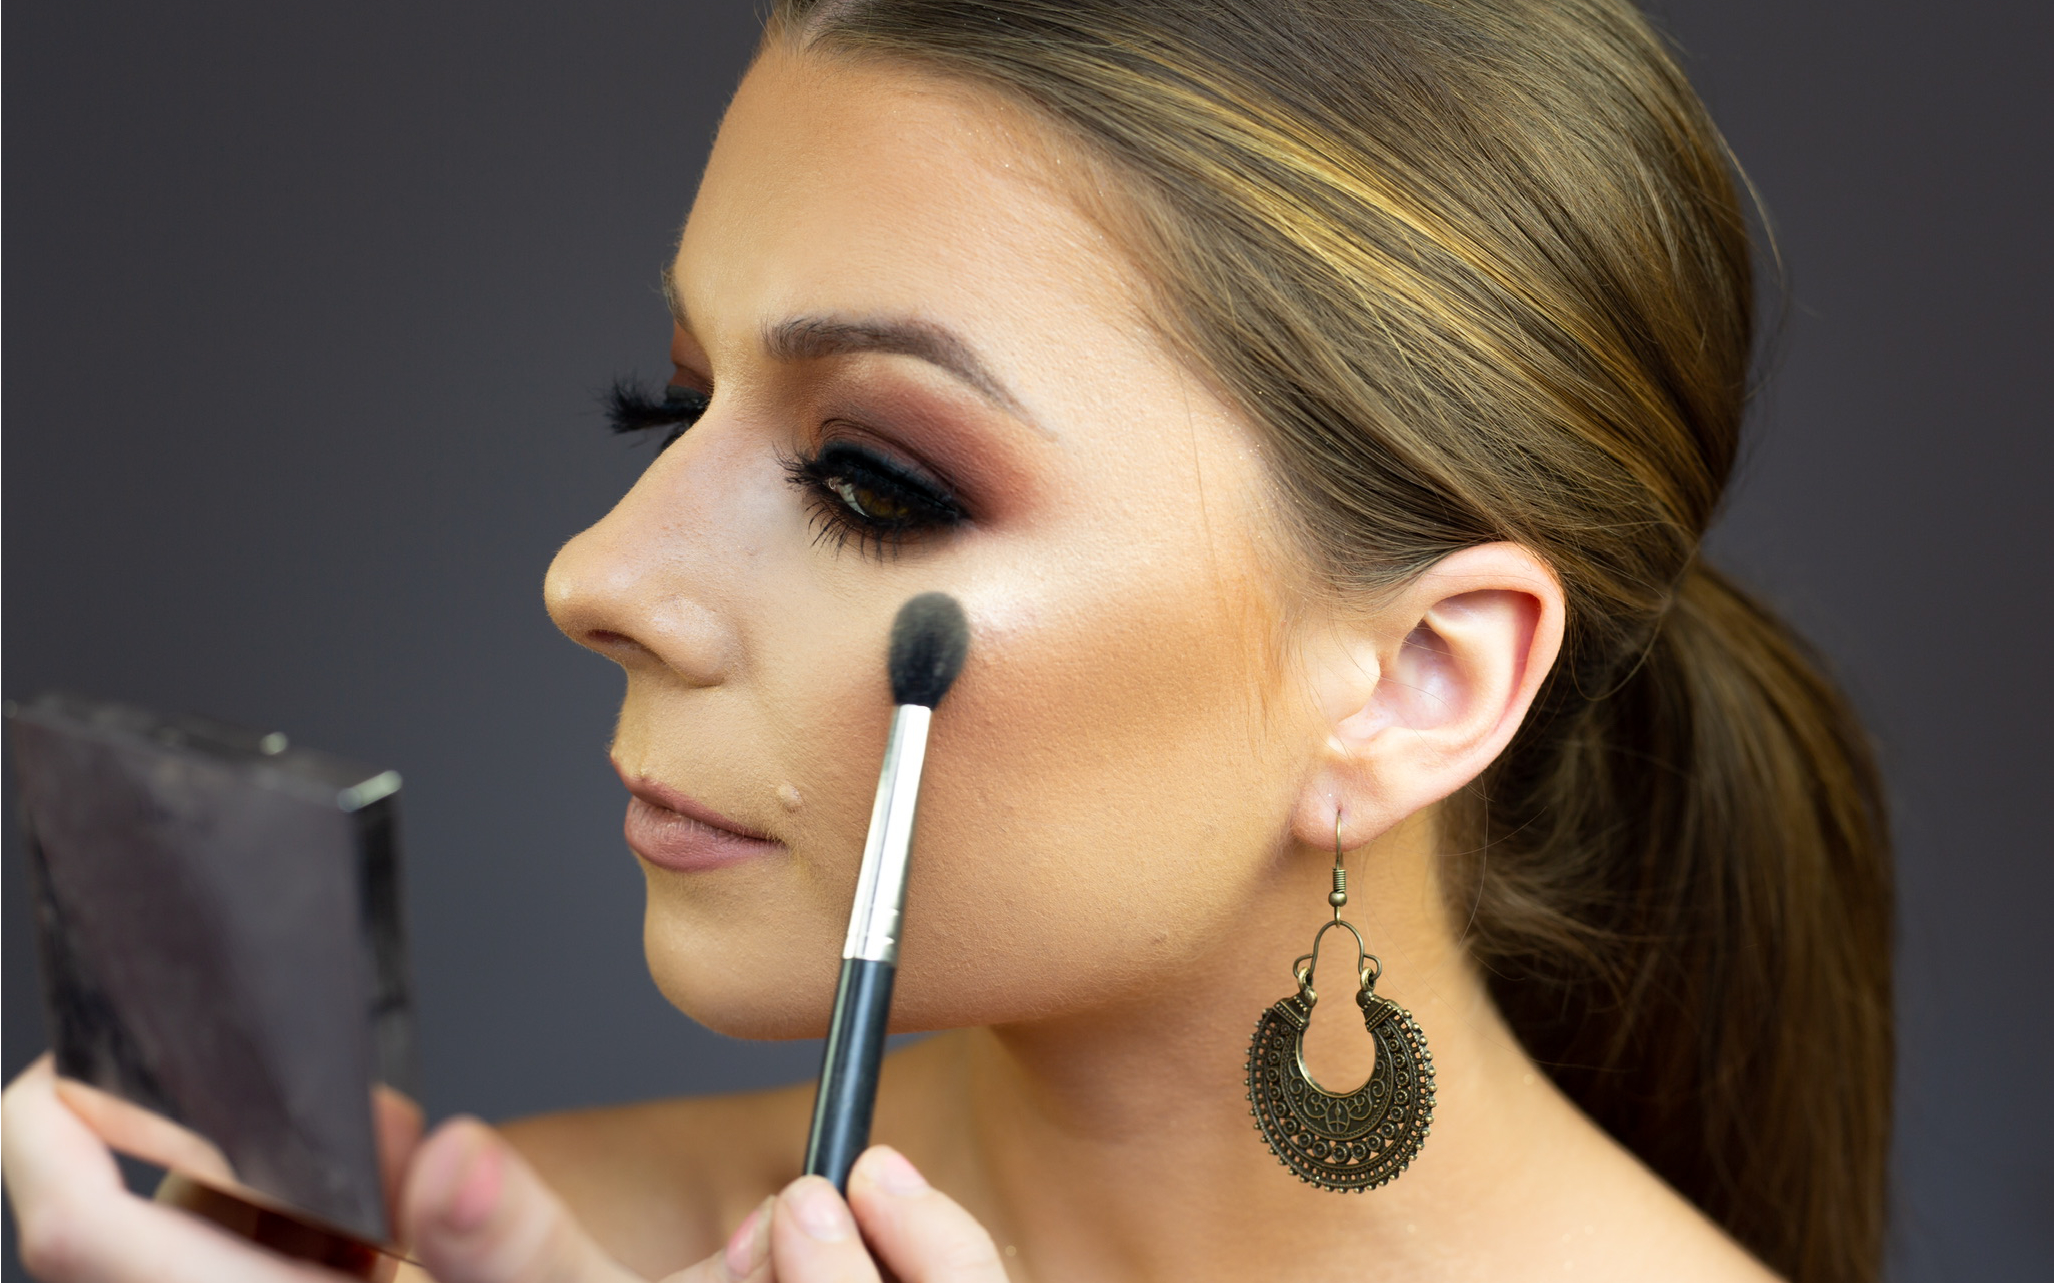 Makeup Artist Applying Makeup